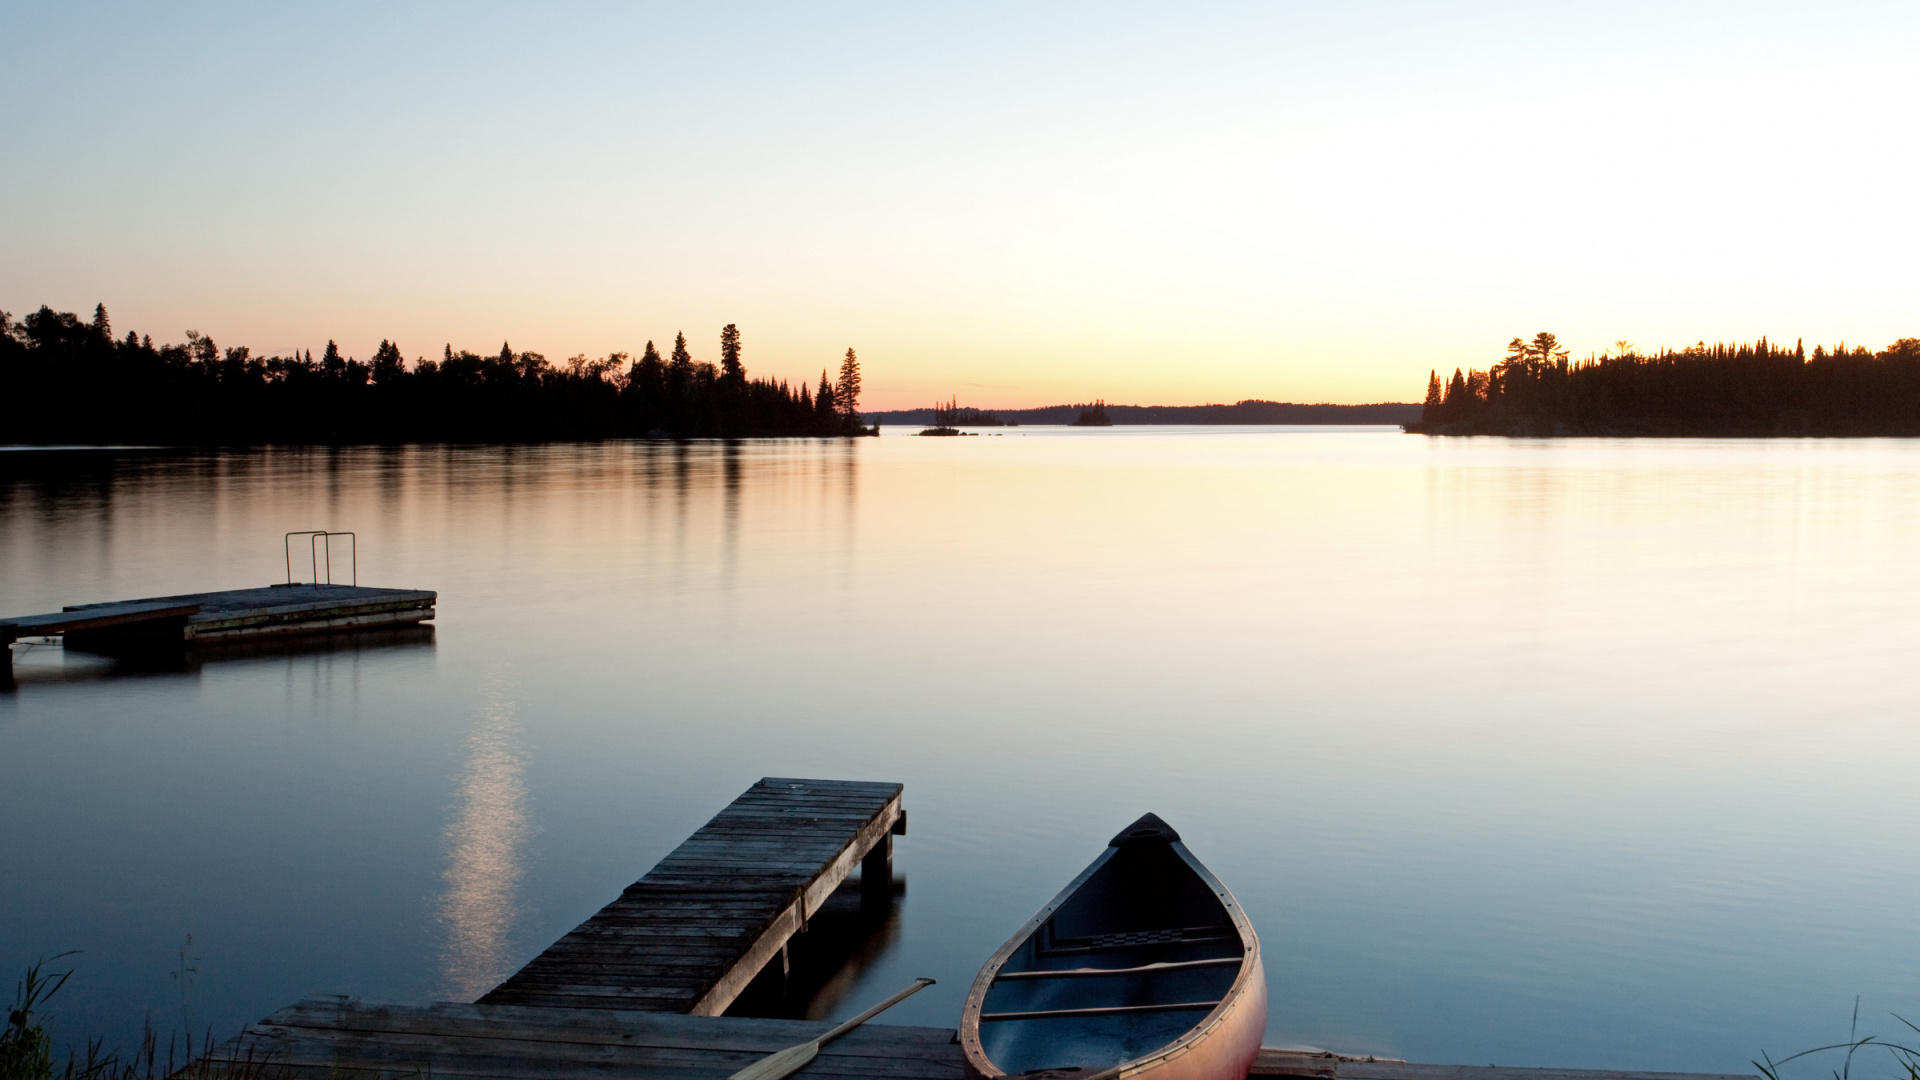 Canoe on a dock at dusk